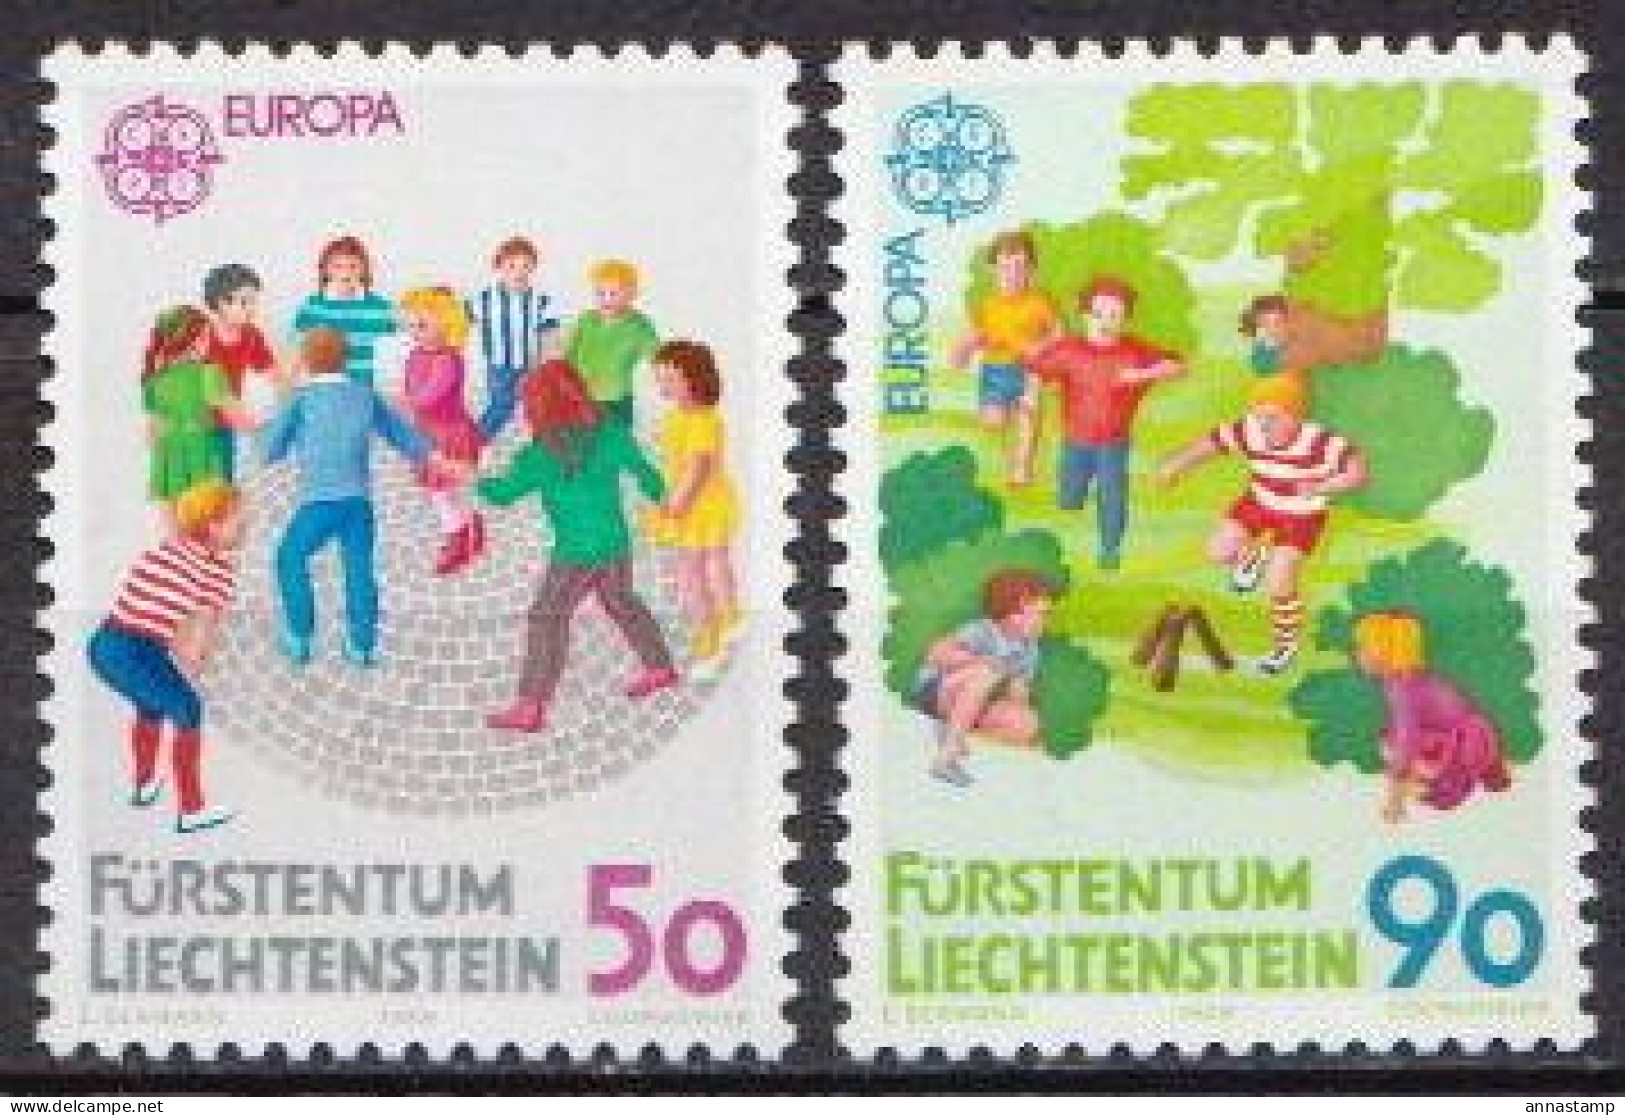 Liechtenstein MNH Set - 1989